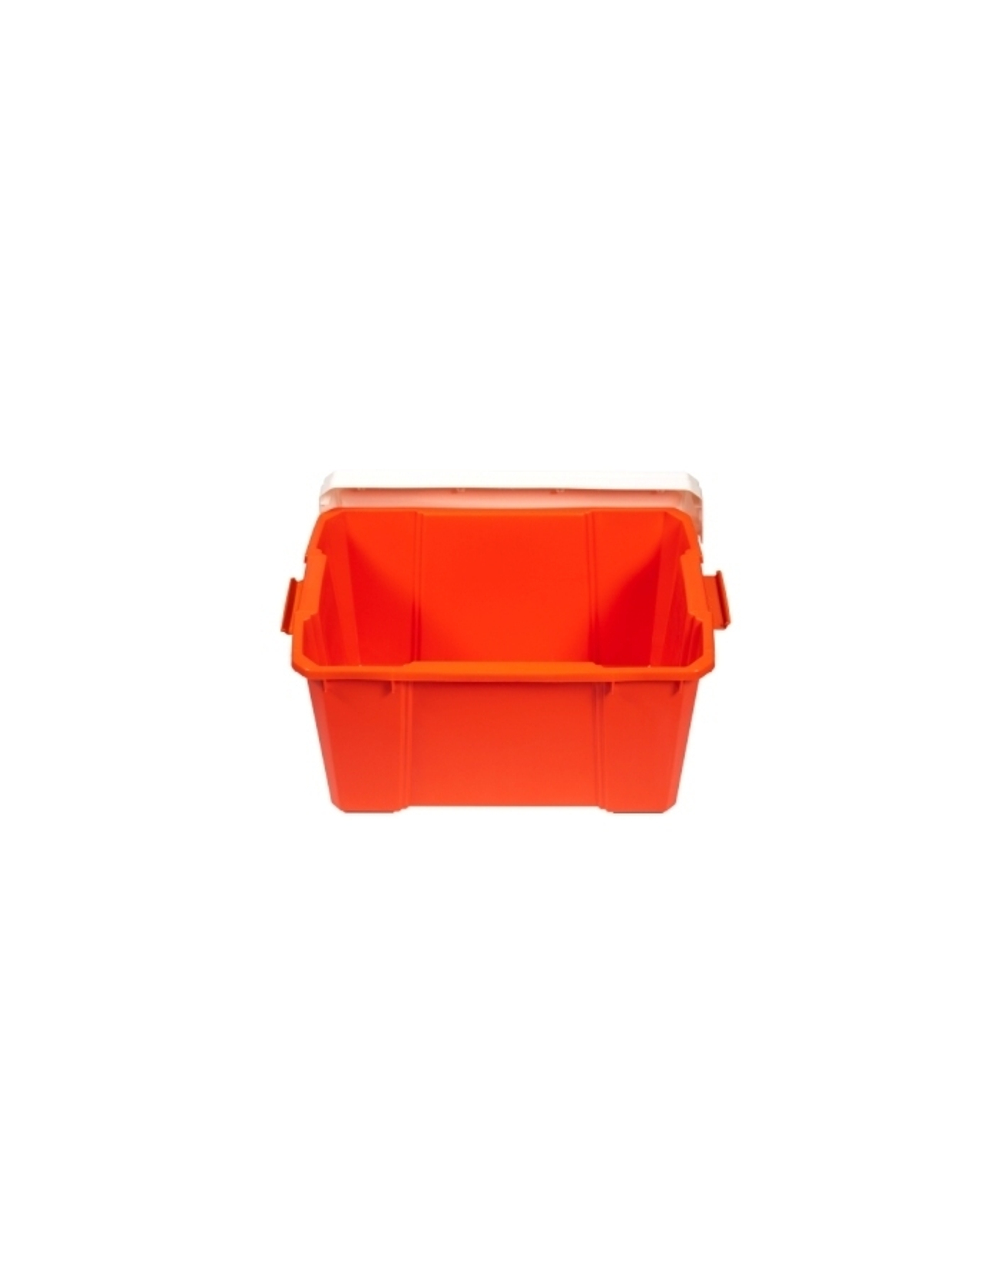 Ящик IRIS для хранения, белый/оранжевый, 56 л, 59,1х38,8х33,2 см